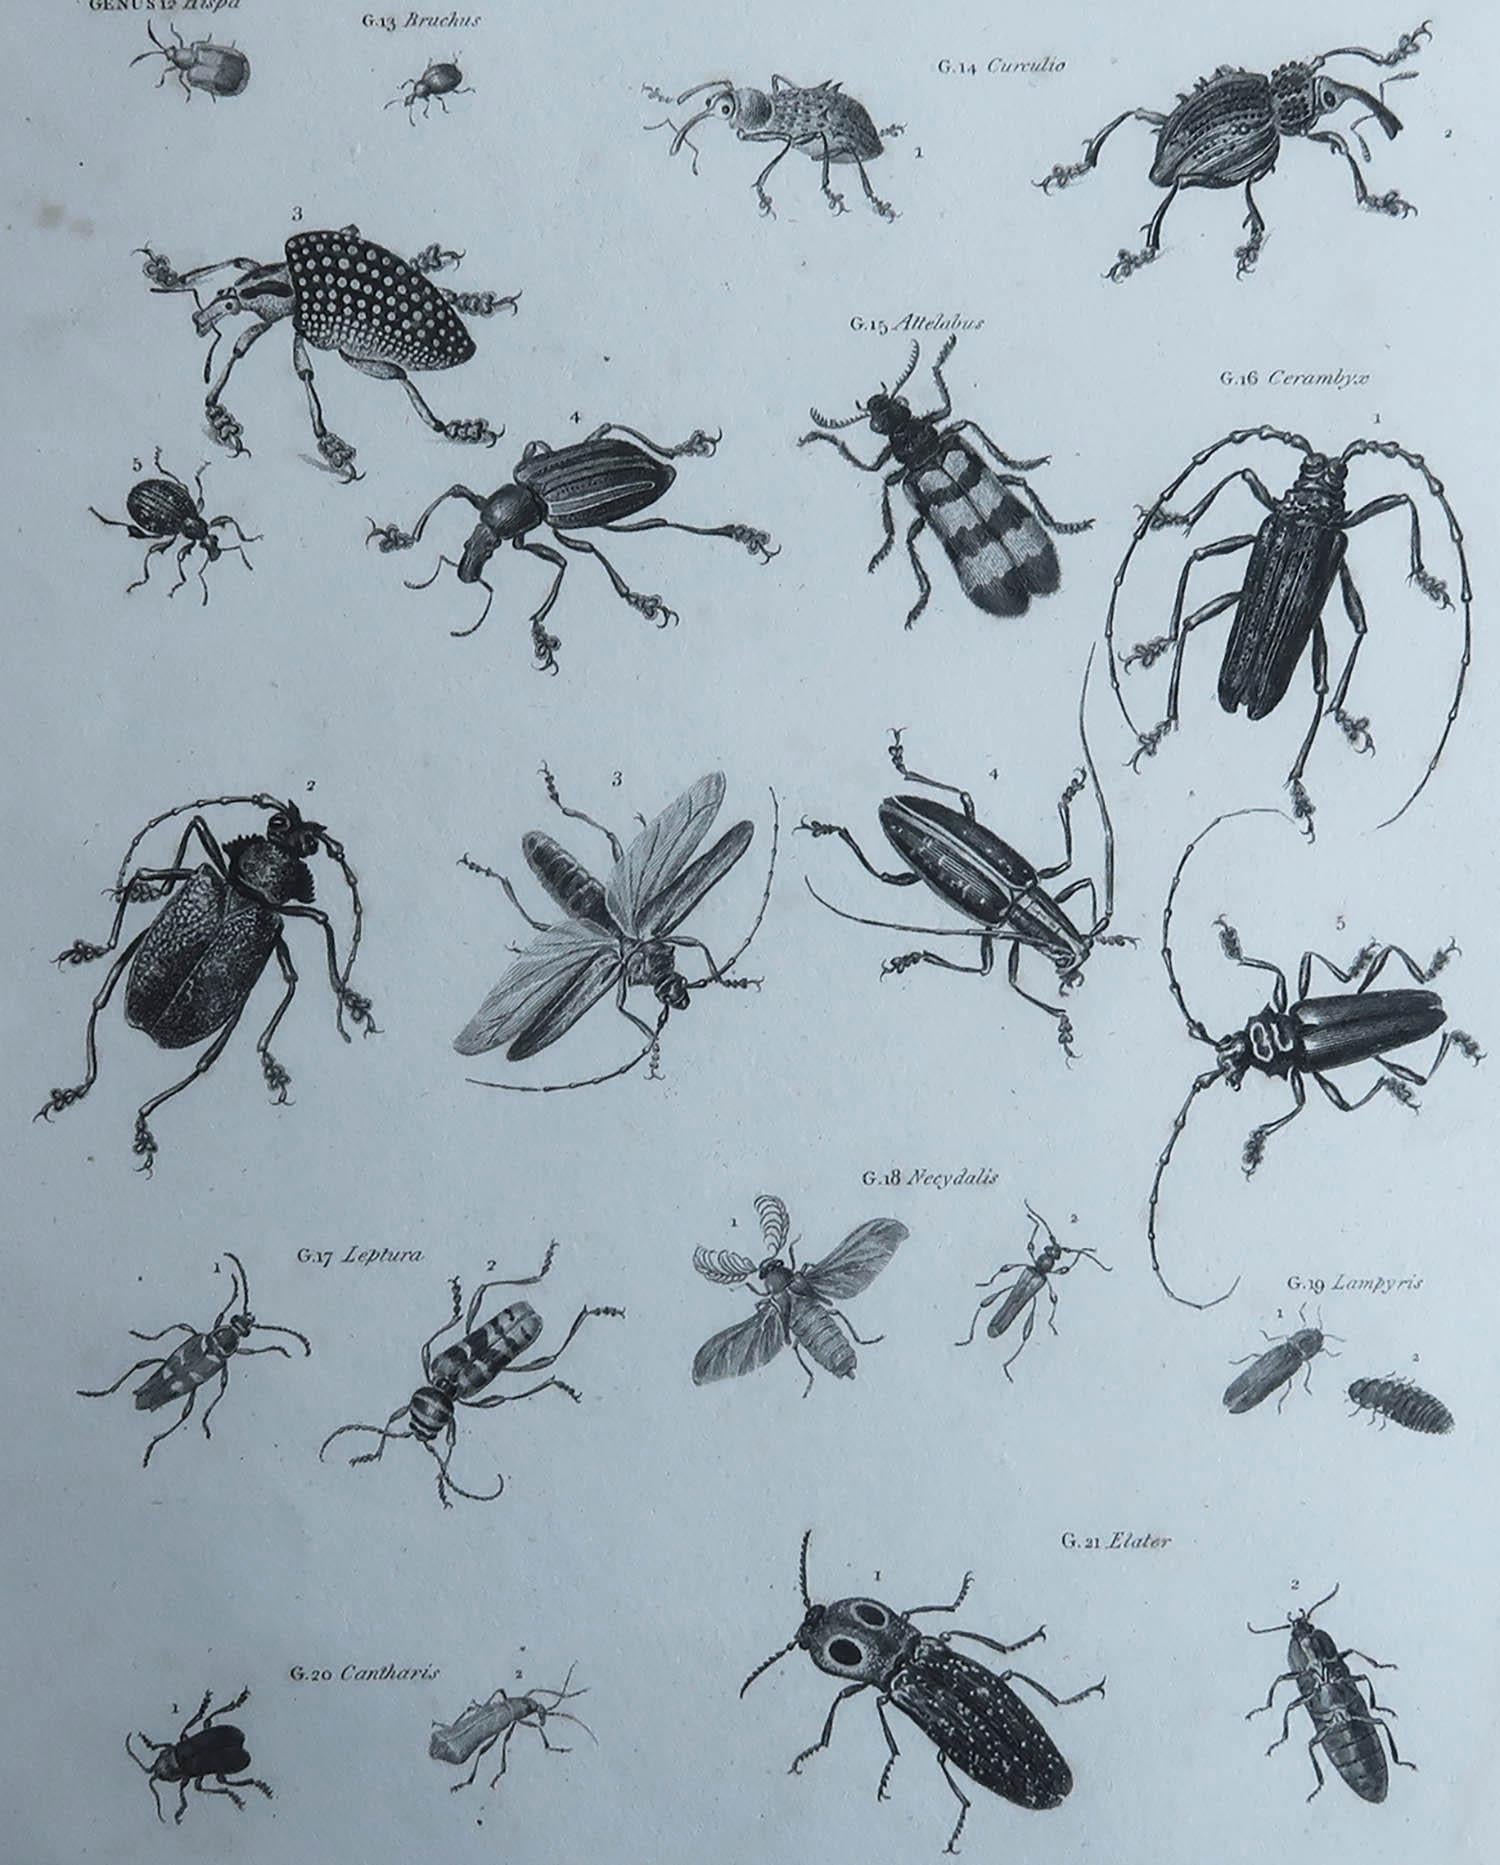 Superbe image d'insectes

Gravure sur cuivre de Milton

Publié par Longman & Rees, Londres

Daté de 1802

Non encadré.

Livraison gratuite. 



